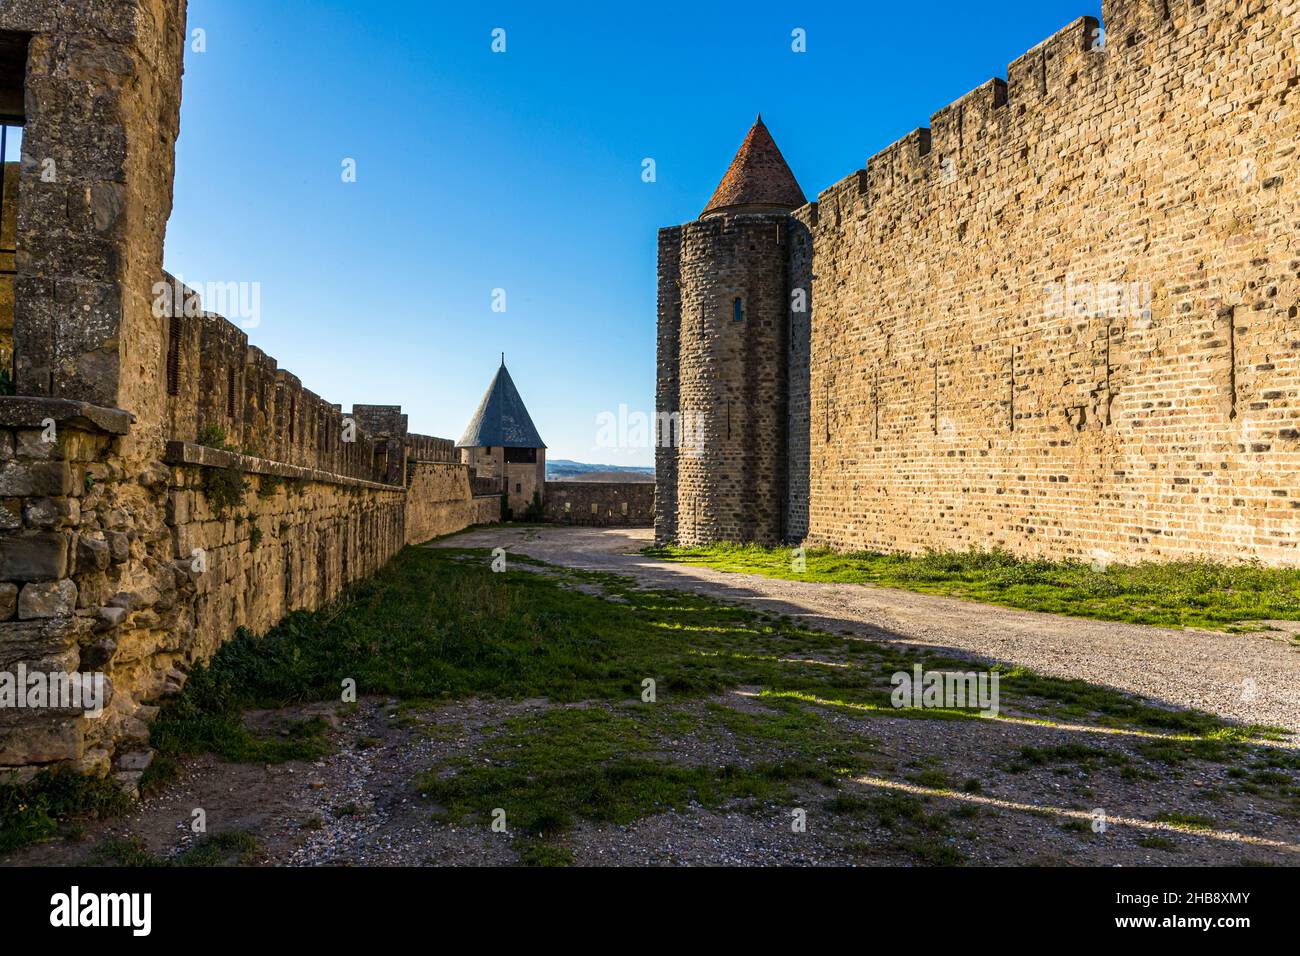 Forteresse médiévale située sur une colline de la vieille ville, appelée Cité de Carcassonne. Carcassonne, France Banque D'Images